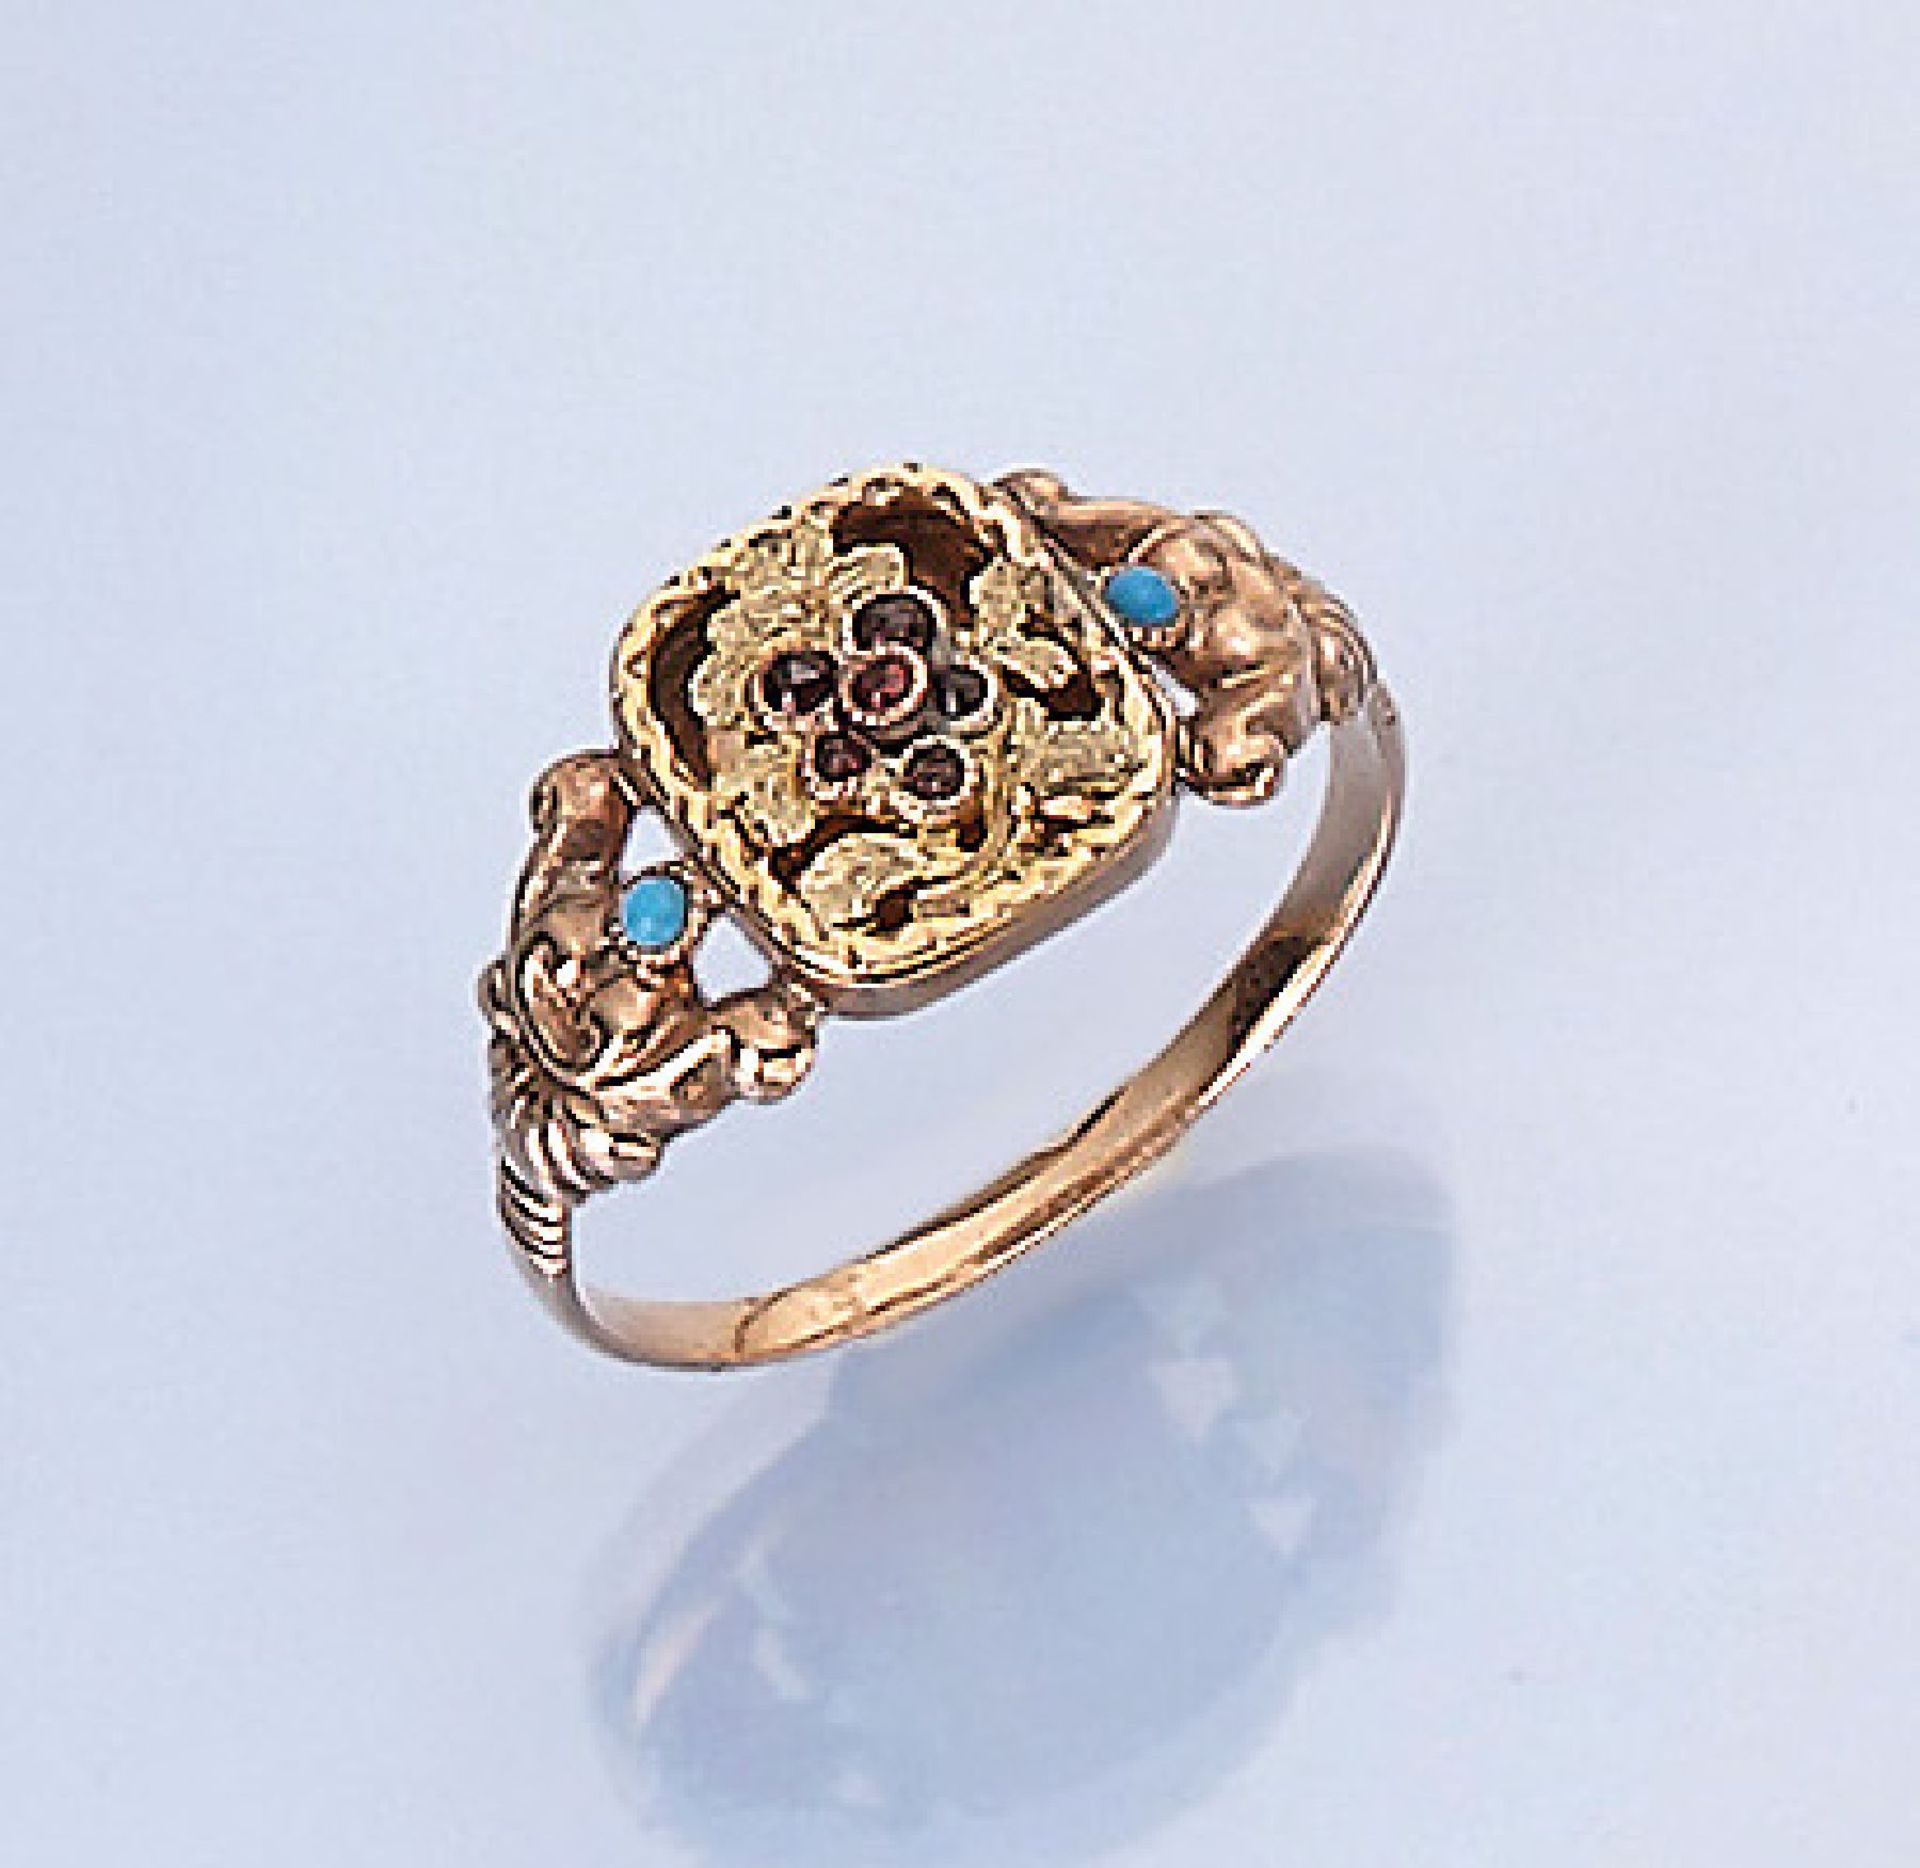 Ring mit Türkis und Granat, deutsch um 1835/ 40, GG/RG 585/000, gepr., zeittyp., RW 6014 kt gold